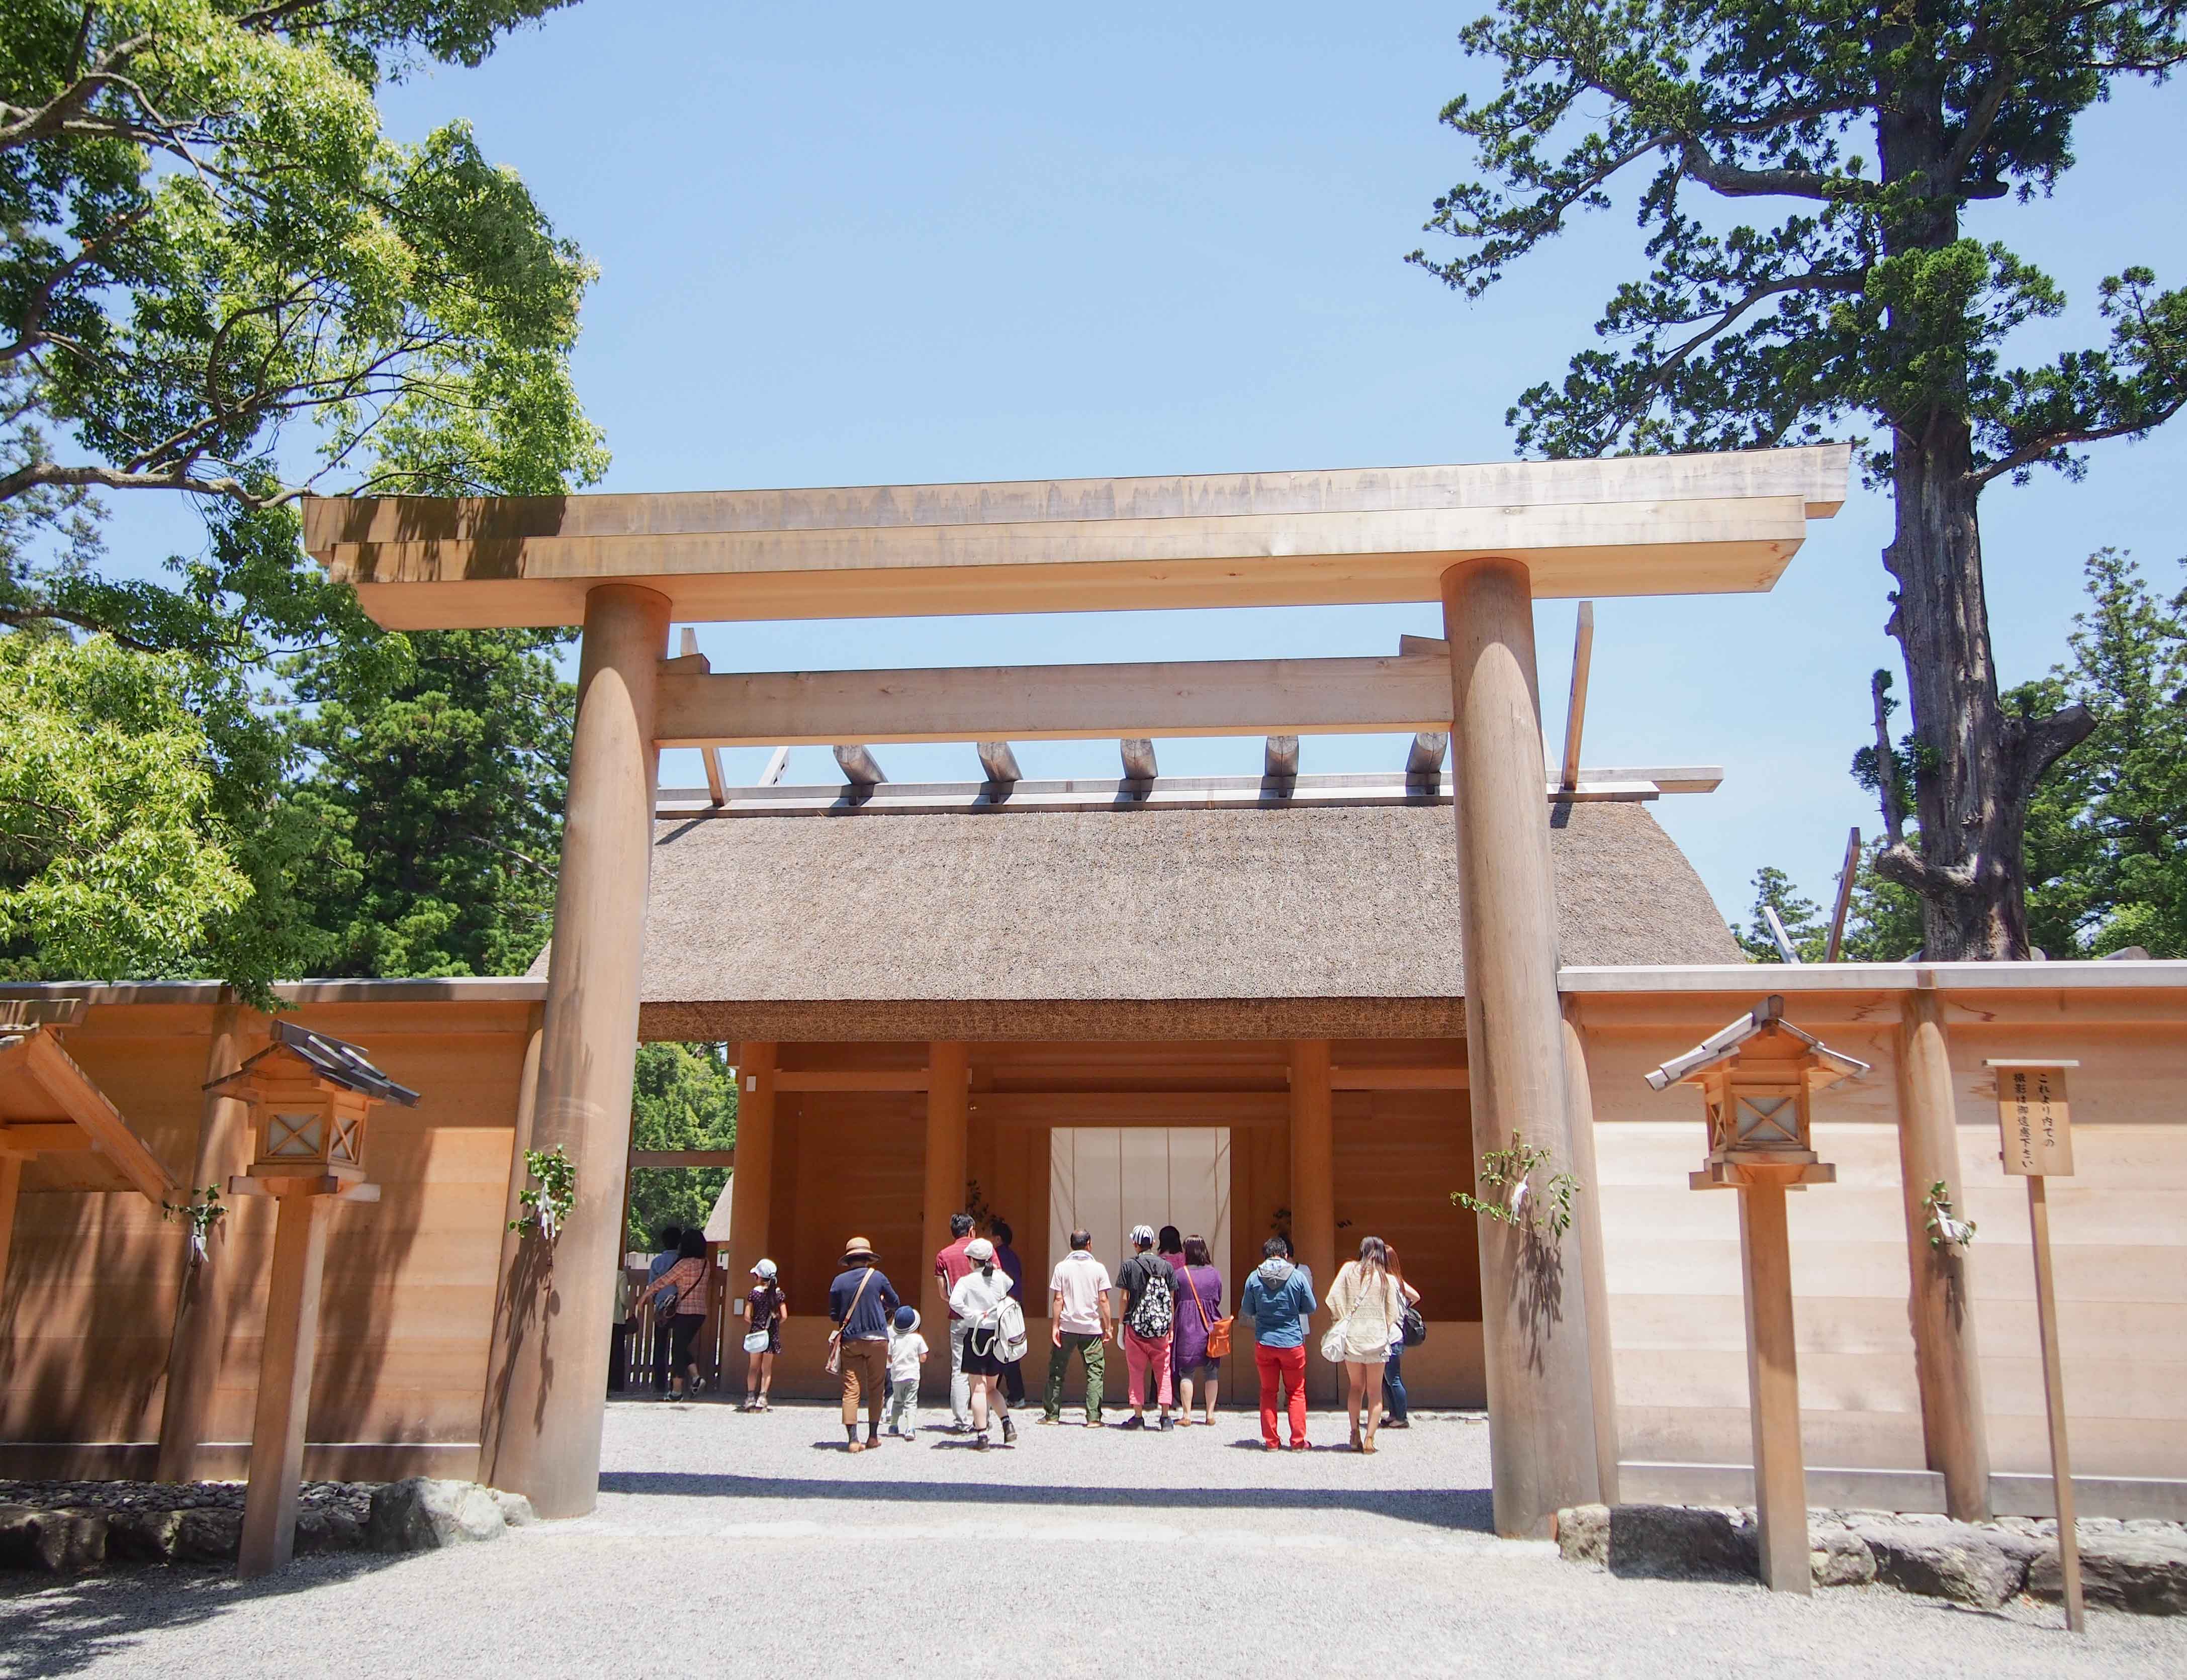 Ise-jingu Shrine